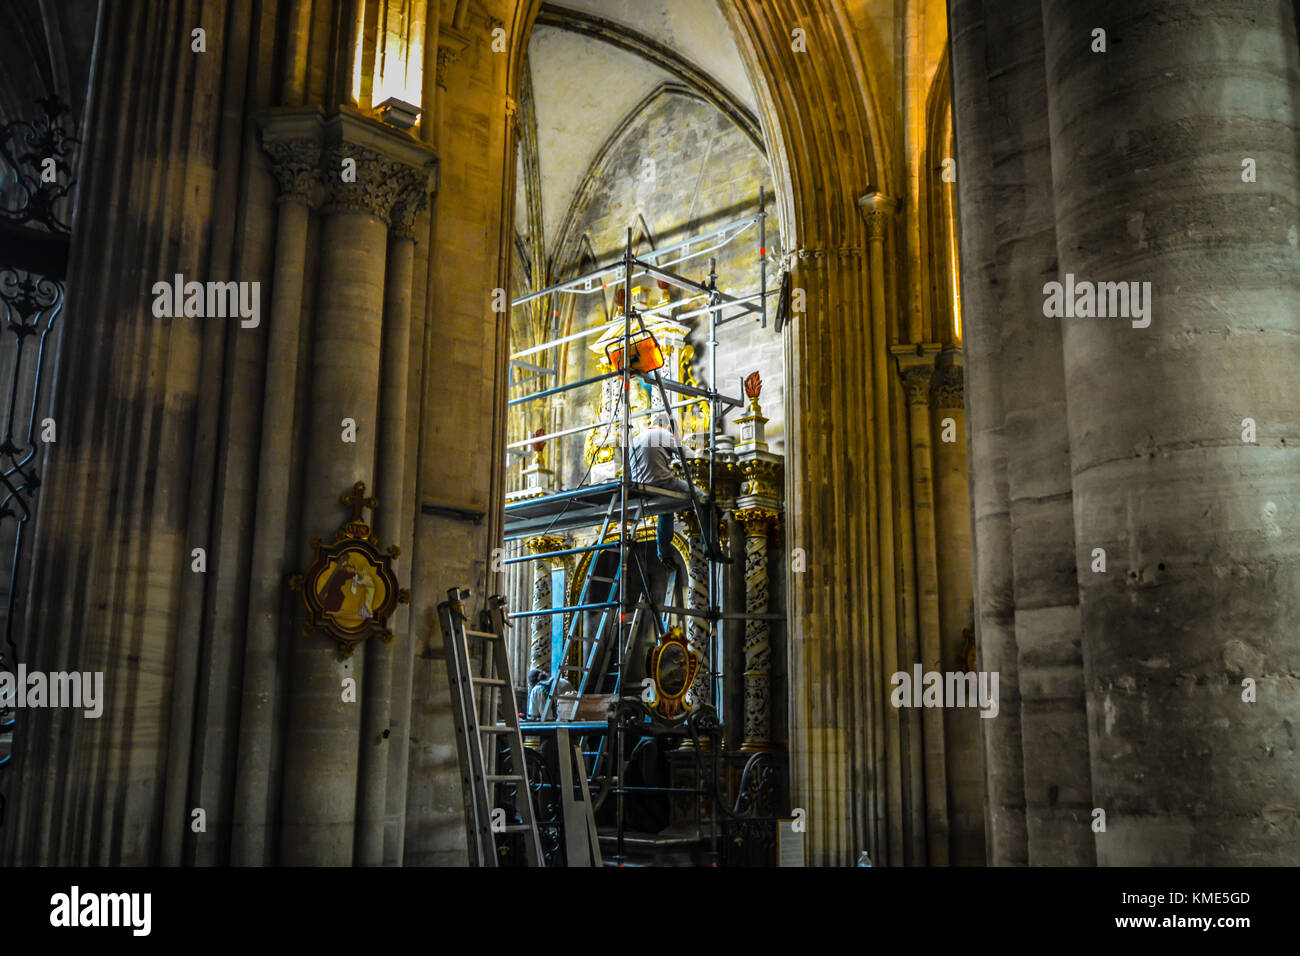 Restauration et rénovation l'historien d'art religieux à partir d'un échafaudage au quartier gothique de la cathédrale de Bayeux en France Banque D'Images